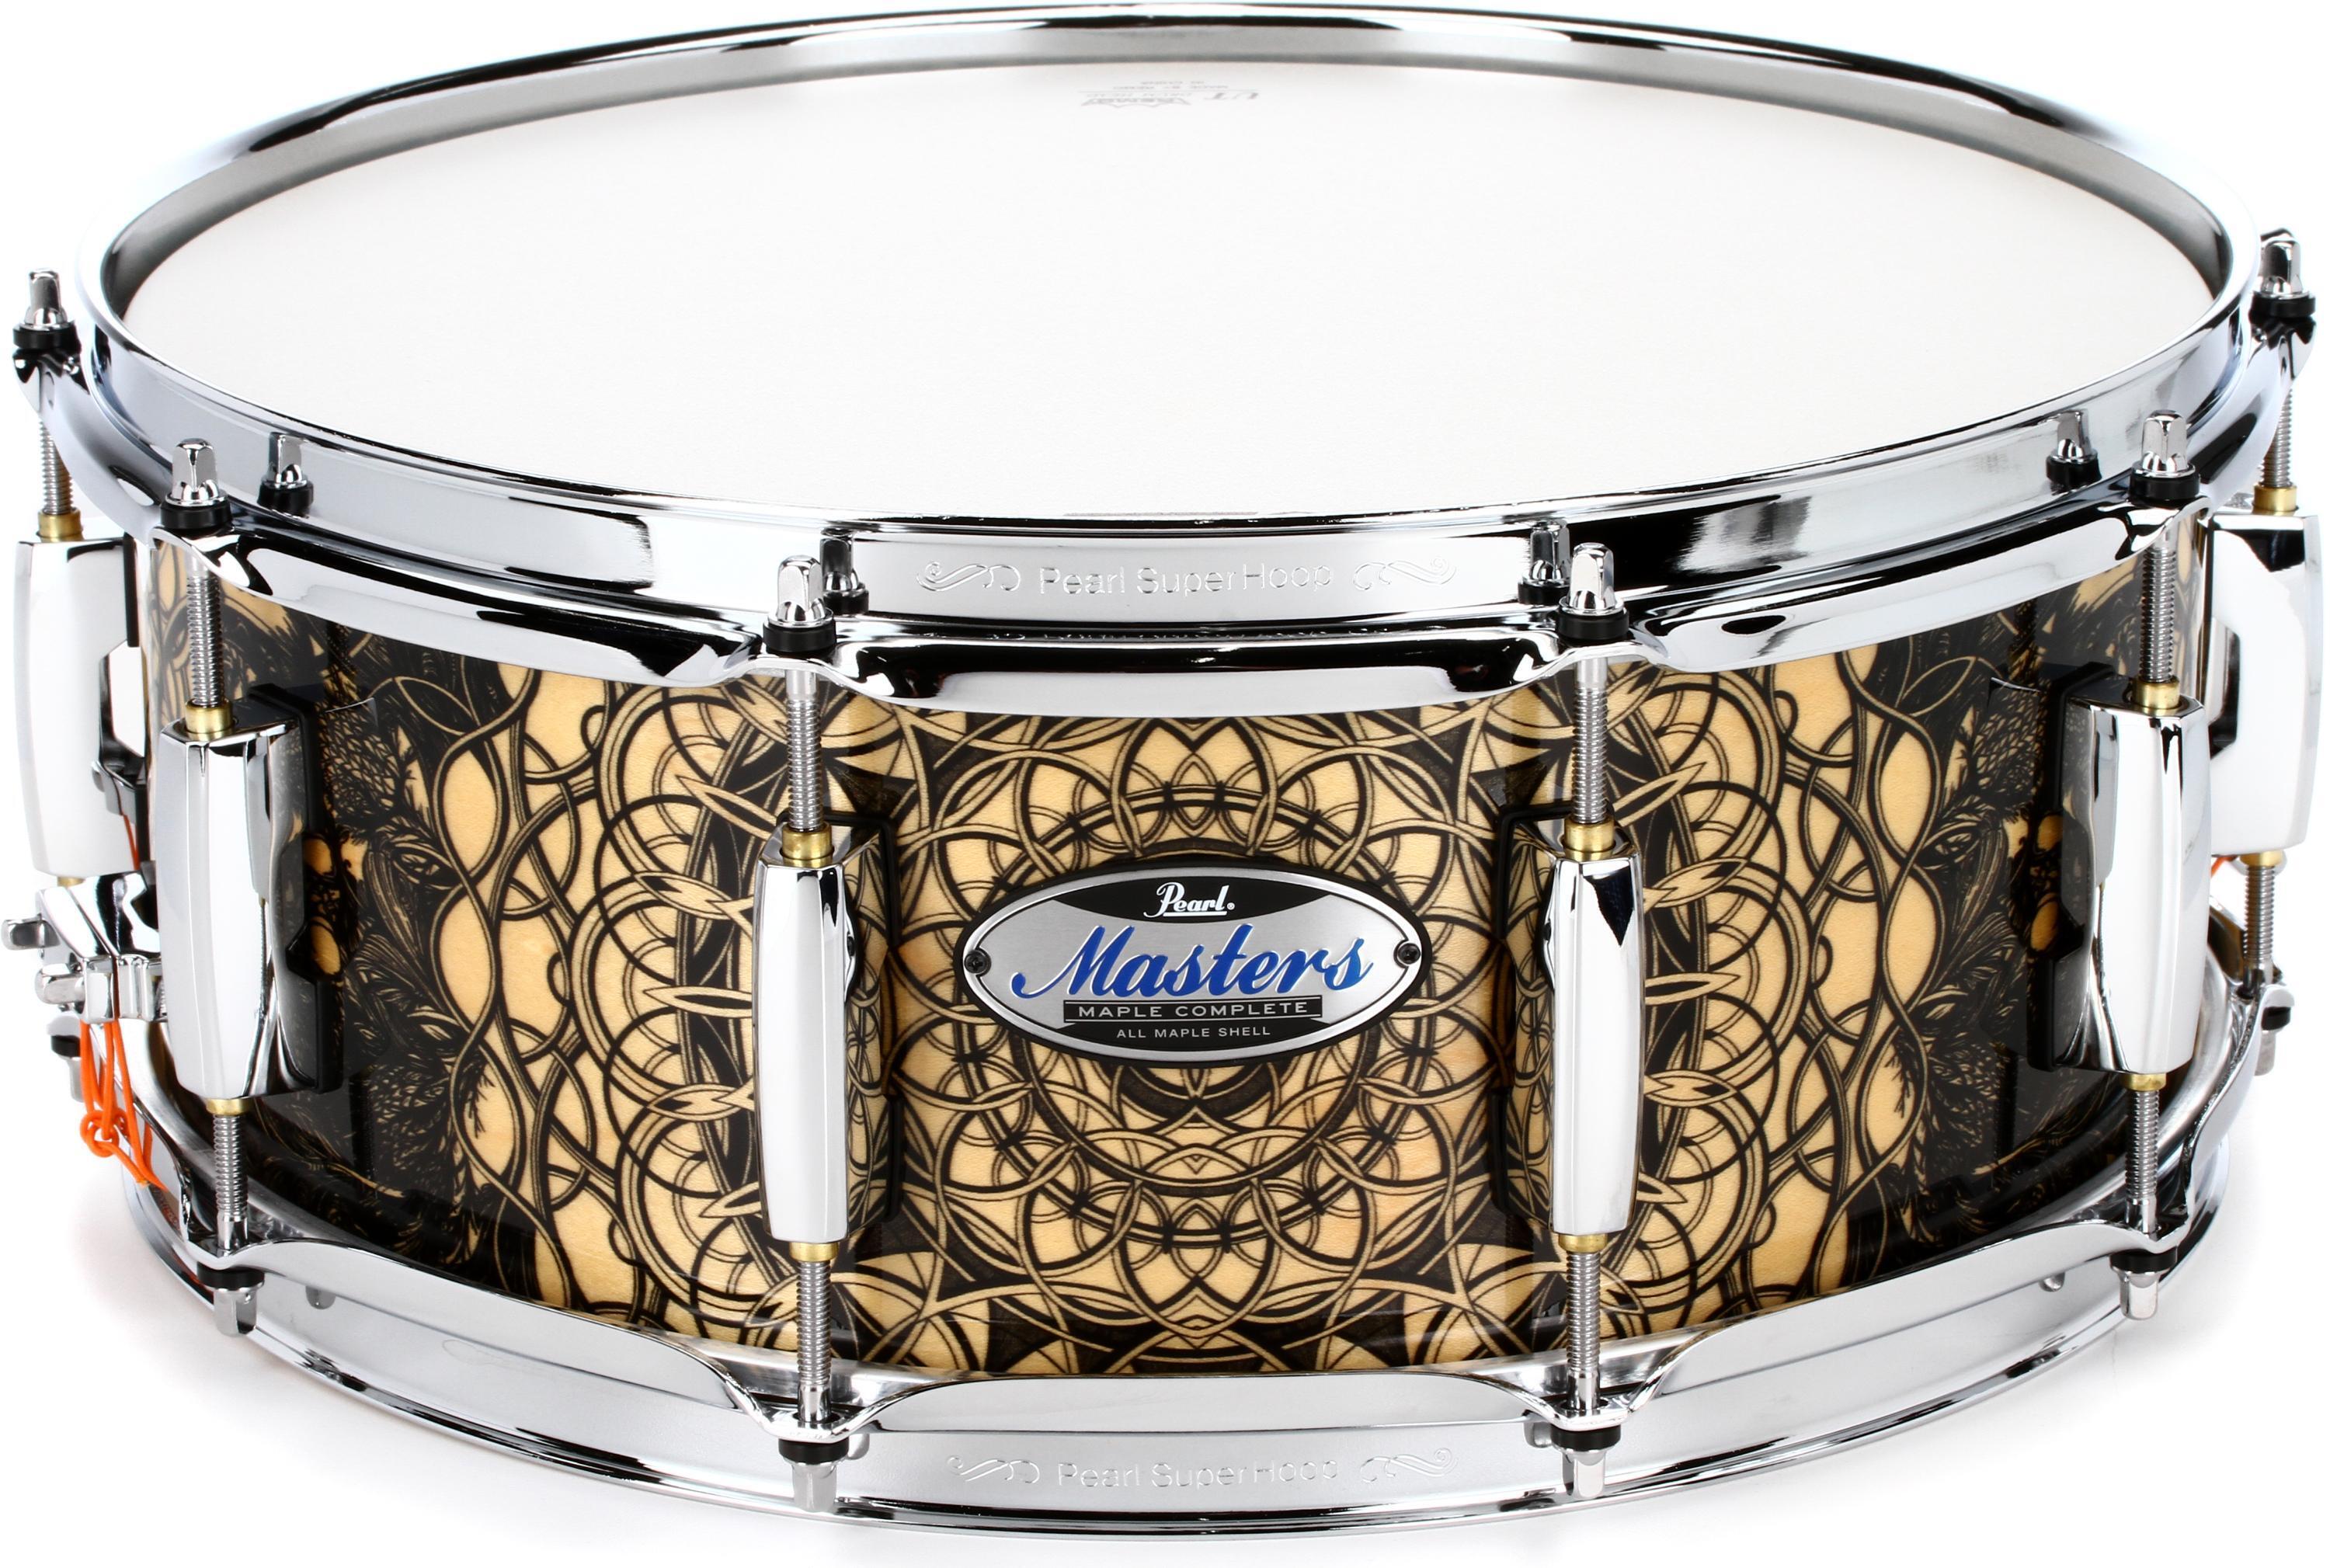 Buy Pearl Sensitone Premium Maple 14 x 5 Snare Drum Maple Finish